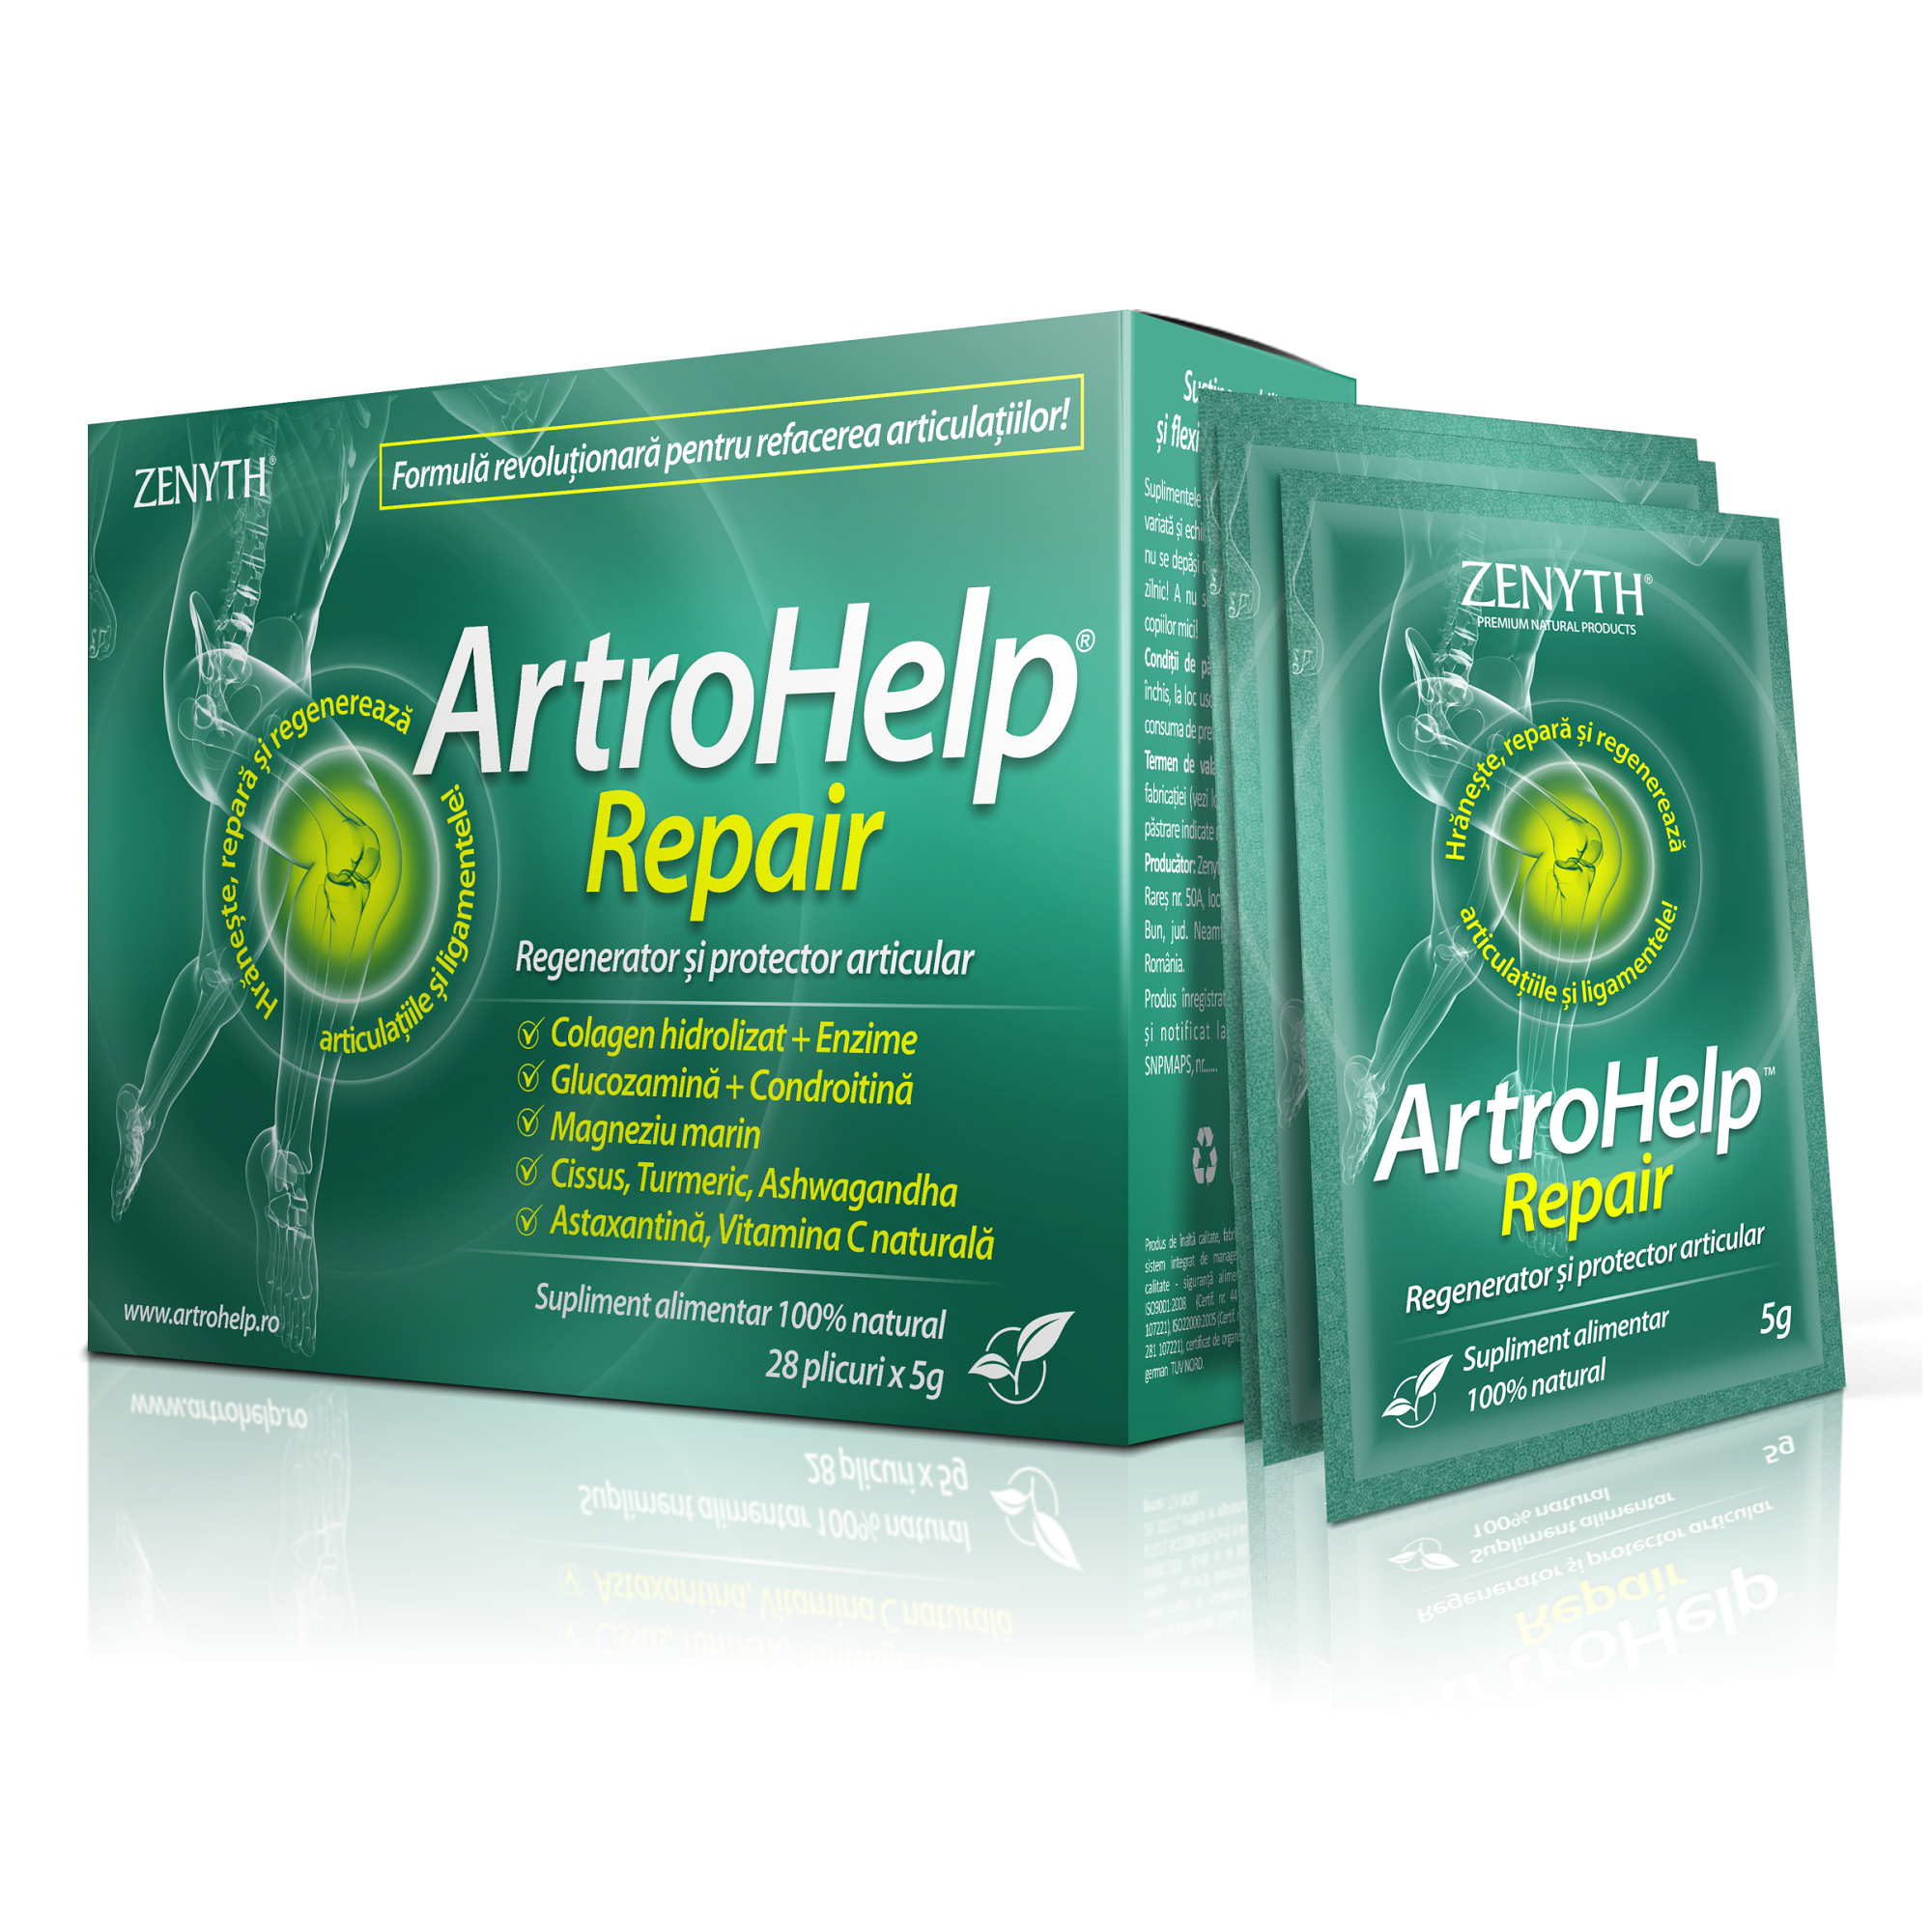 ArtroHelp Repair – pentru regenerarea articulatiilor, 28 plicuri | Catena | Preturi mici!